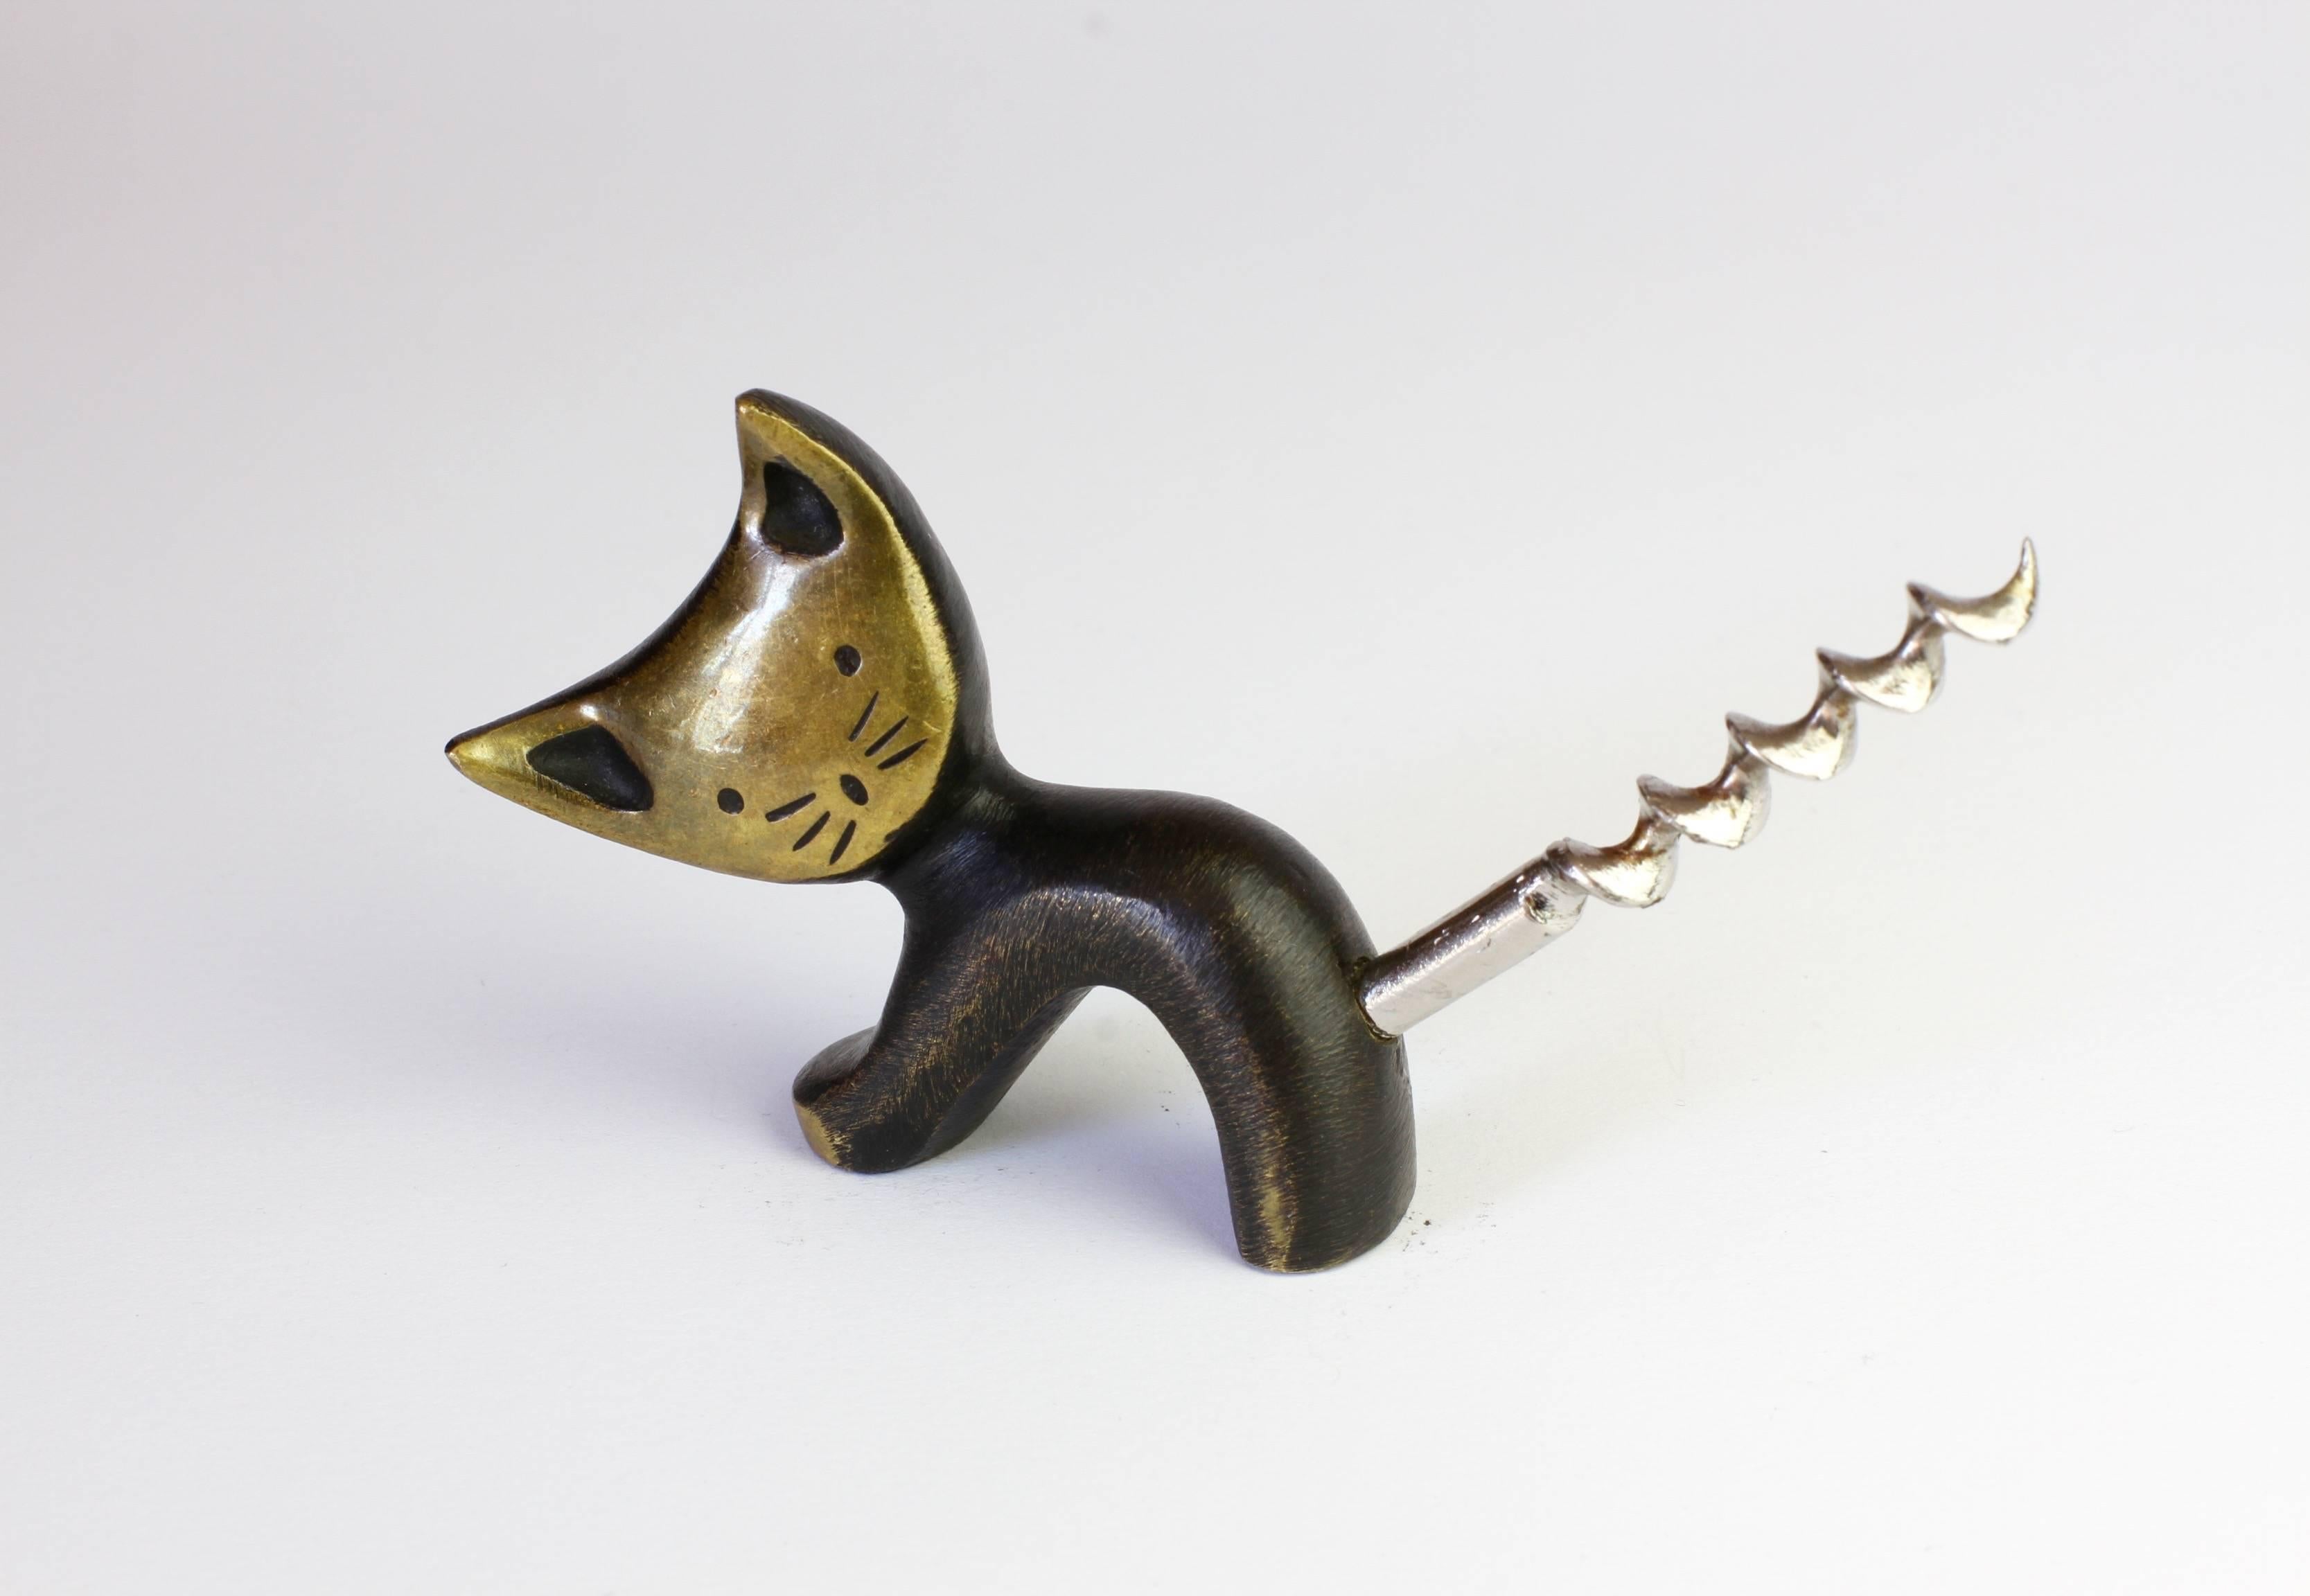 Austrian Whimsical Brass Cat Corkscrew by Walter Bosse for Hertha Baller, circa 1950s